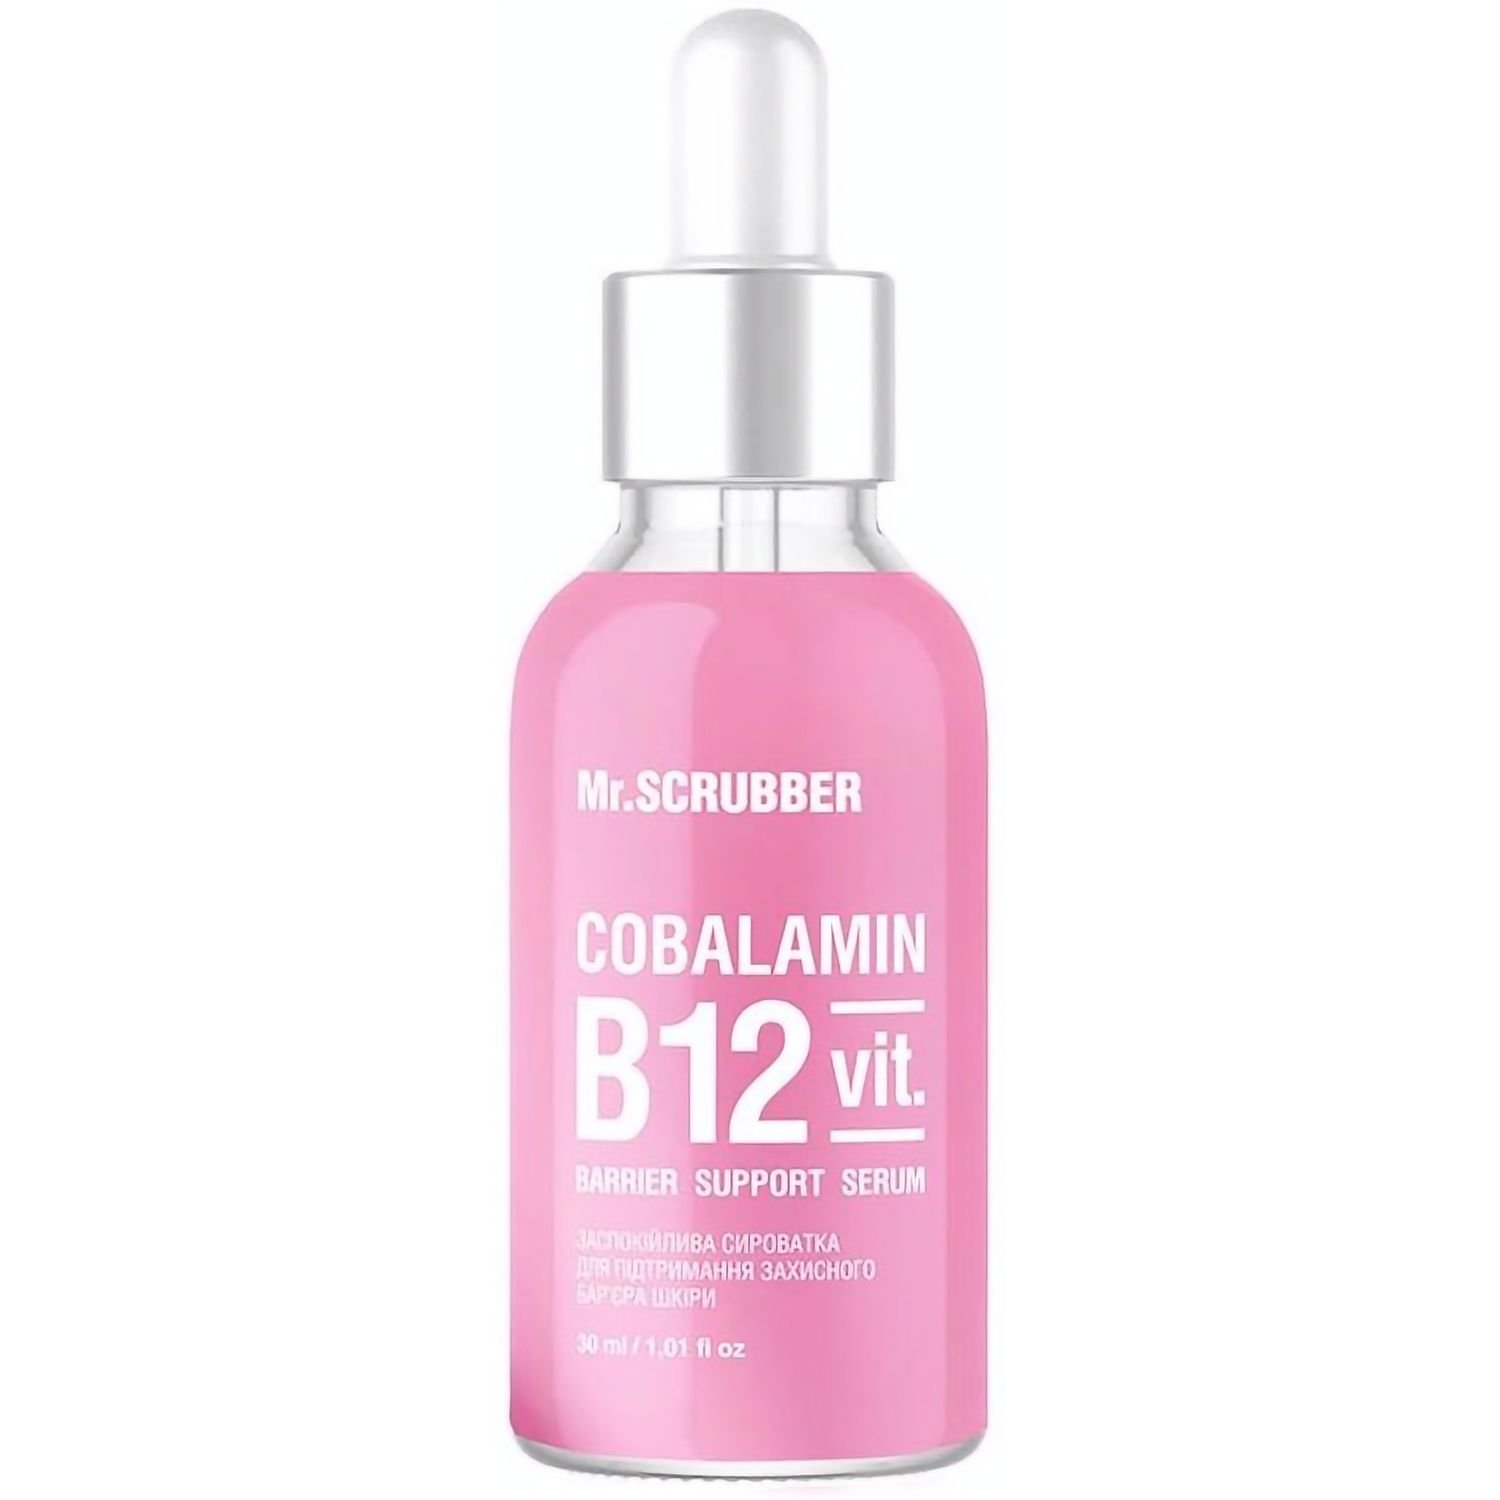 Заспокійлива сироватка для Mr.Scrubber Cobalamin B12 для підтримки захисного бар'єру шкіри обличчя 30 мл - фото 1